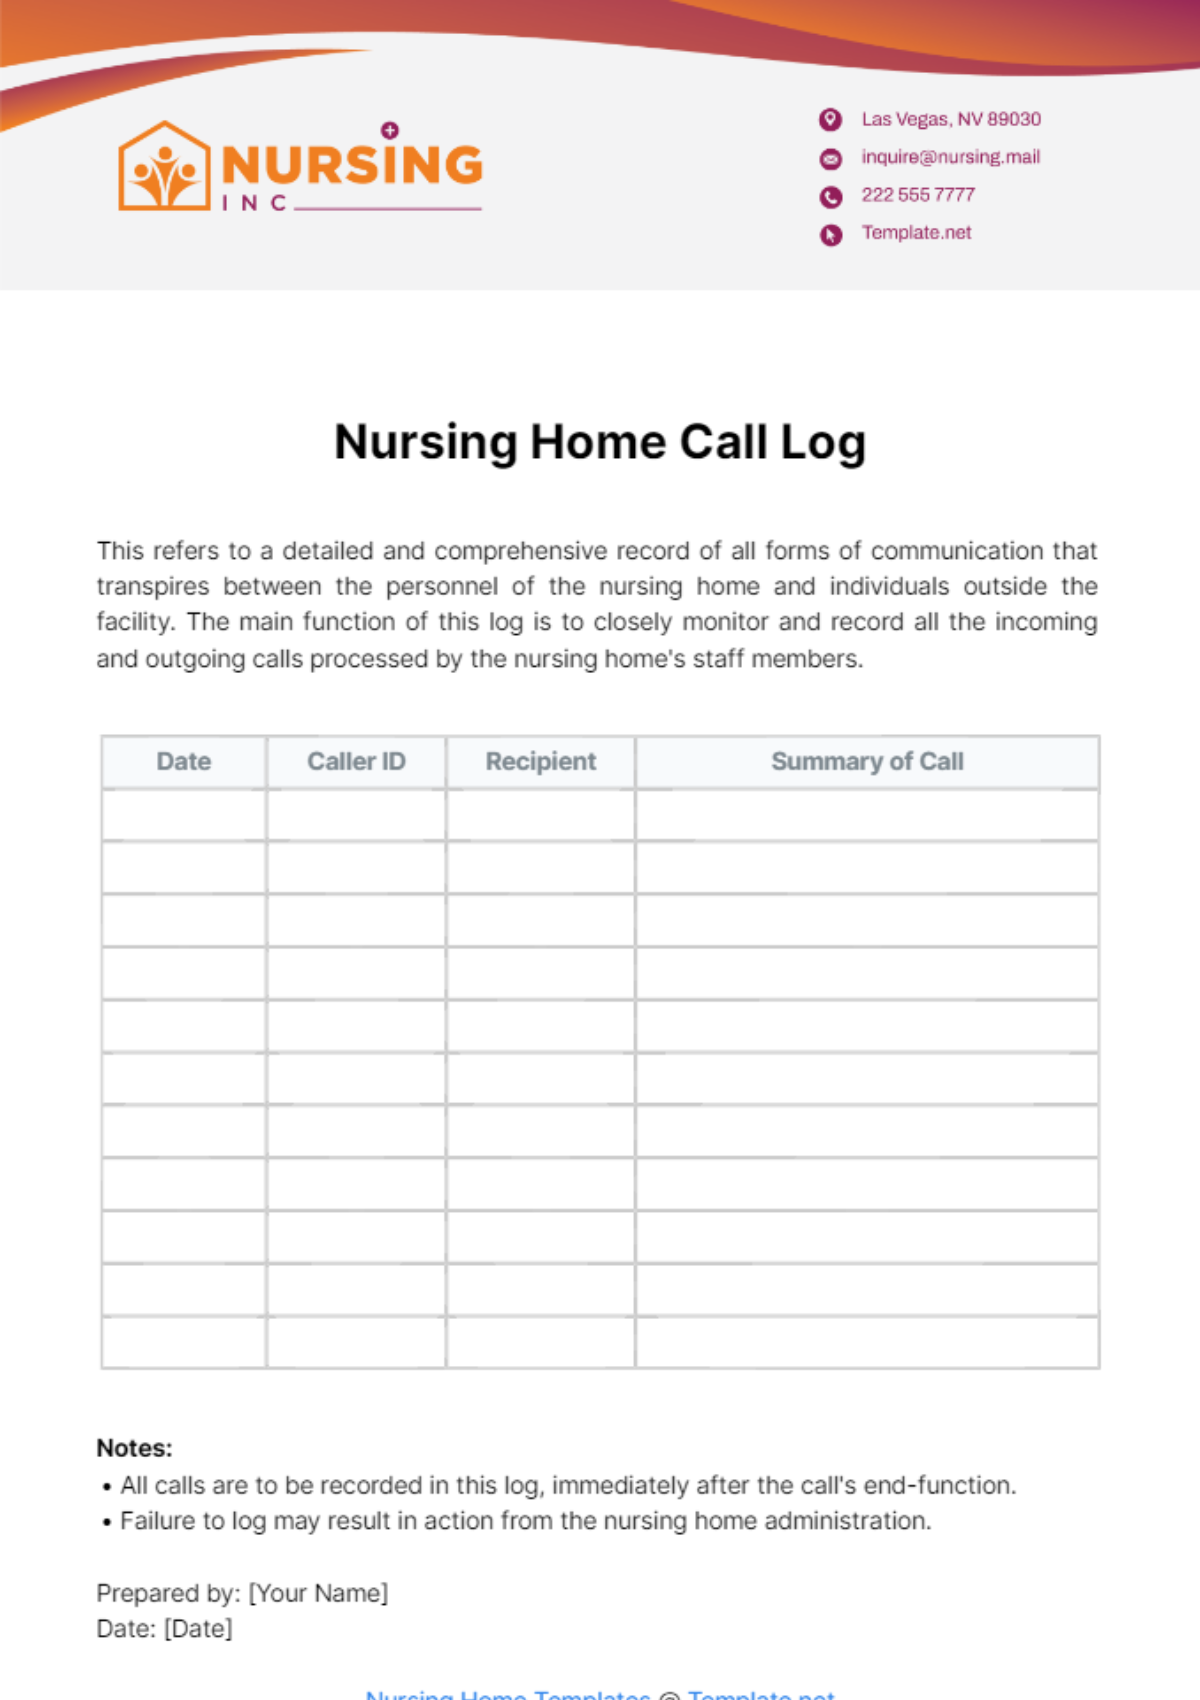 Nursing Home Call Log Template